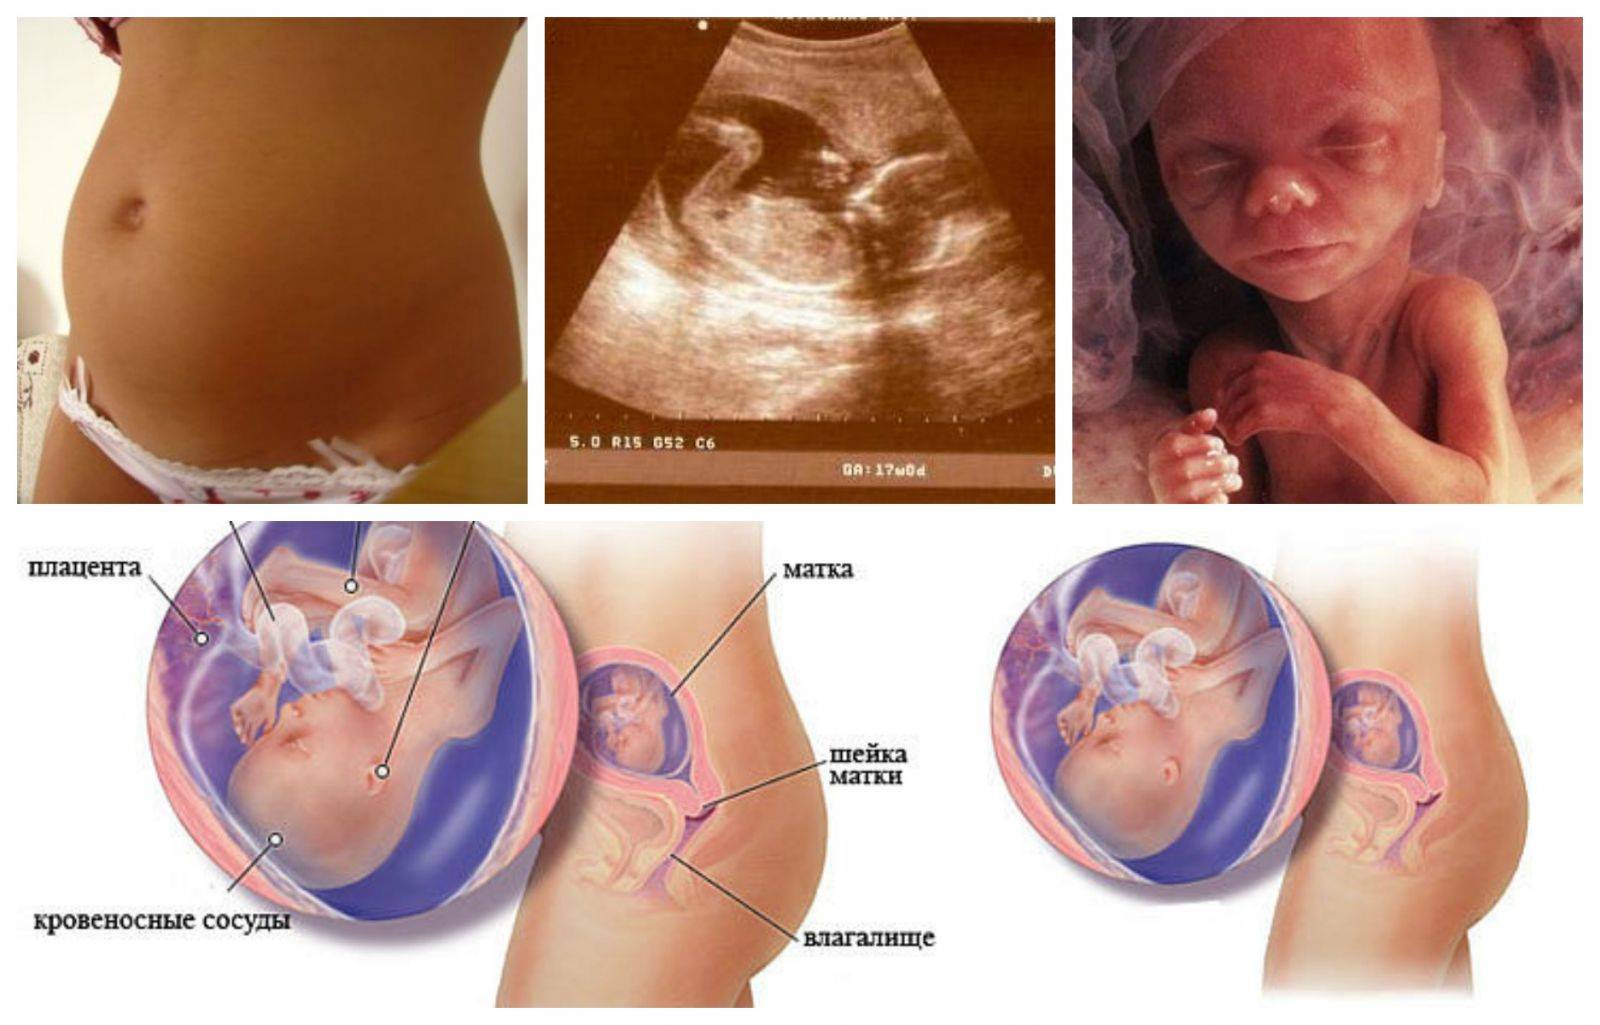 16 неделя беременности: что происходит в женском организме, фото ребёнка на узи, его развитие и размер